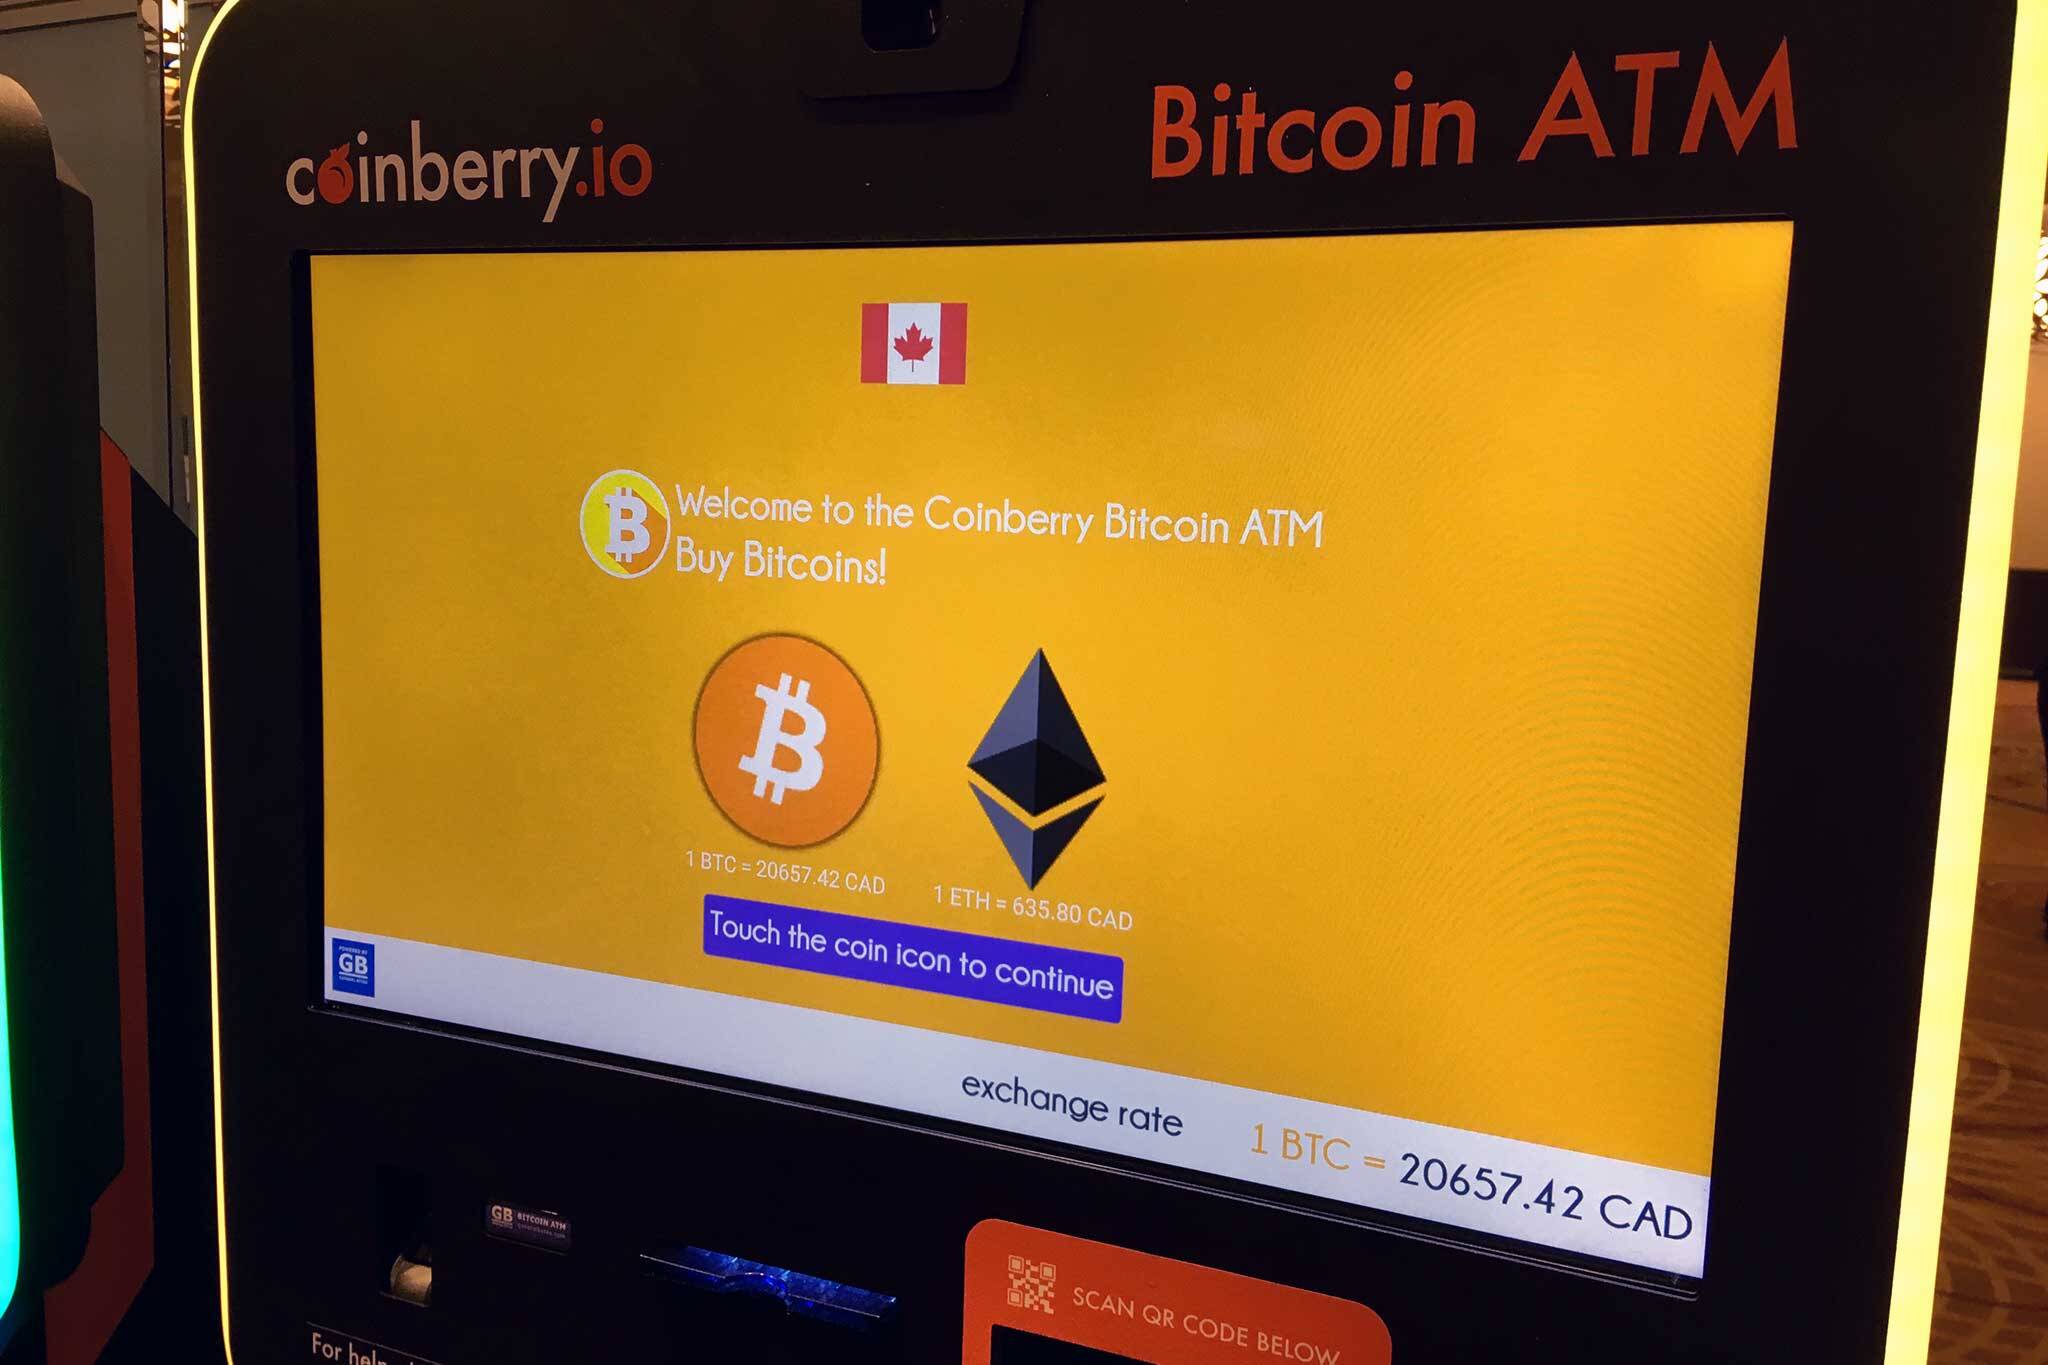 buy bitcoin canada accept bitcoin